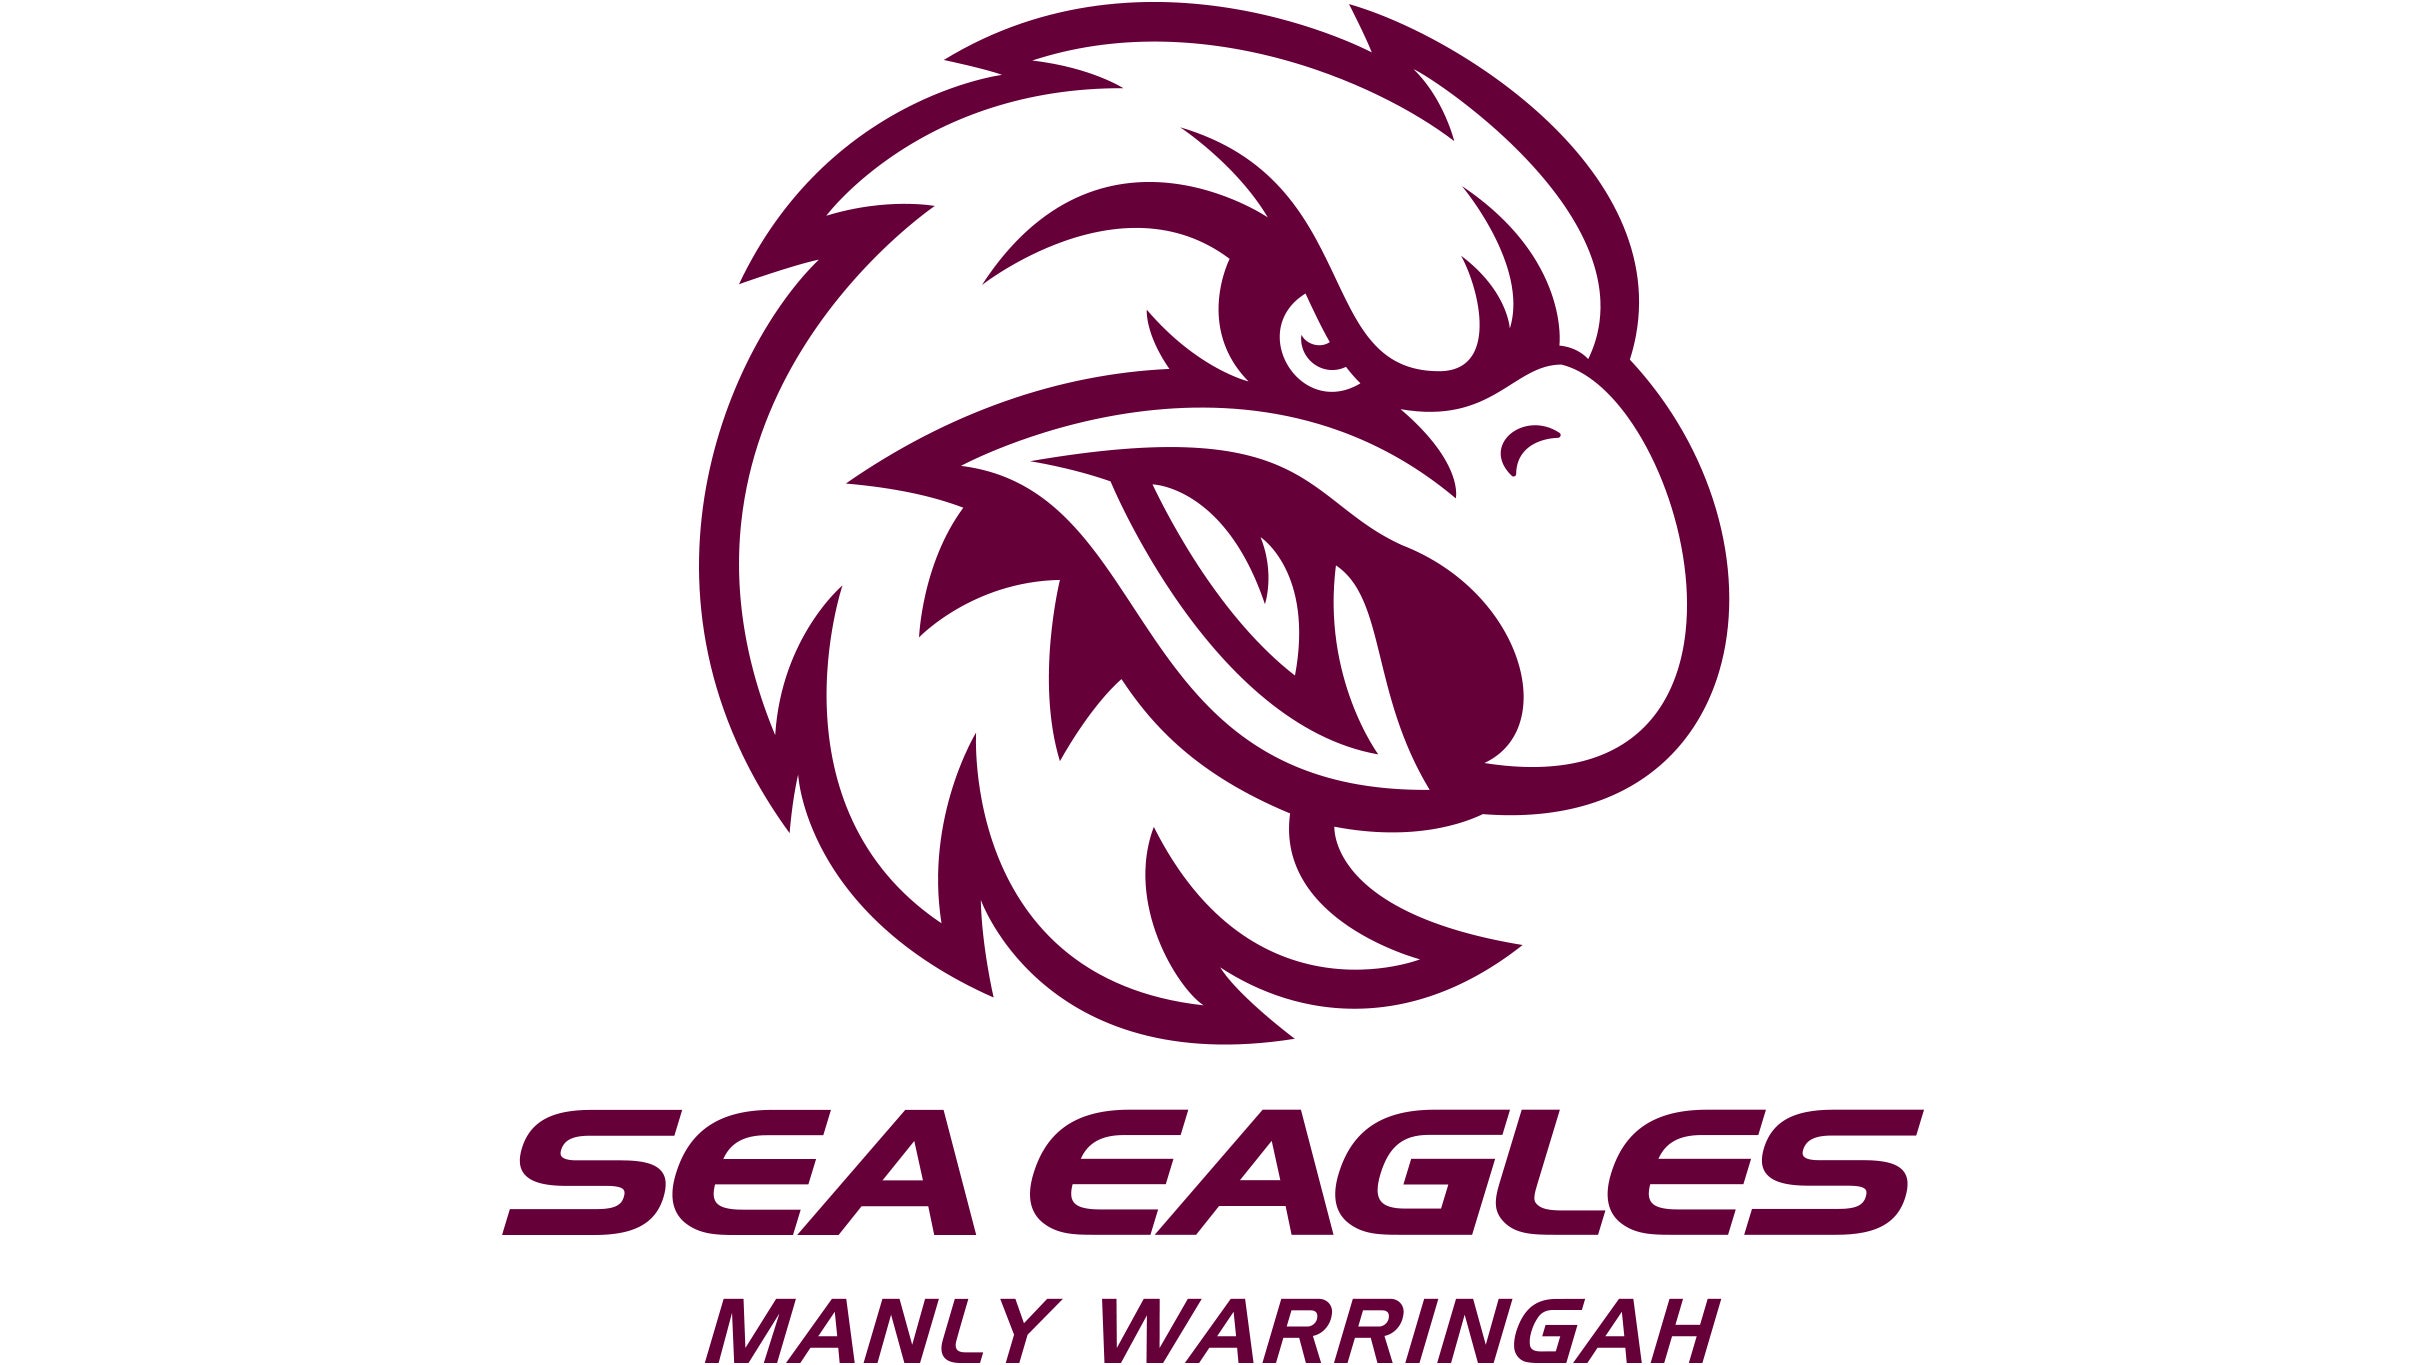 Manly Warringah Sea Eagles v Storm in Brookvale promo photo for Sea Eagles Member presale offer code